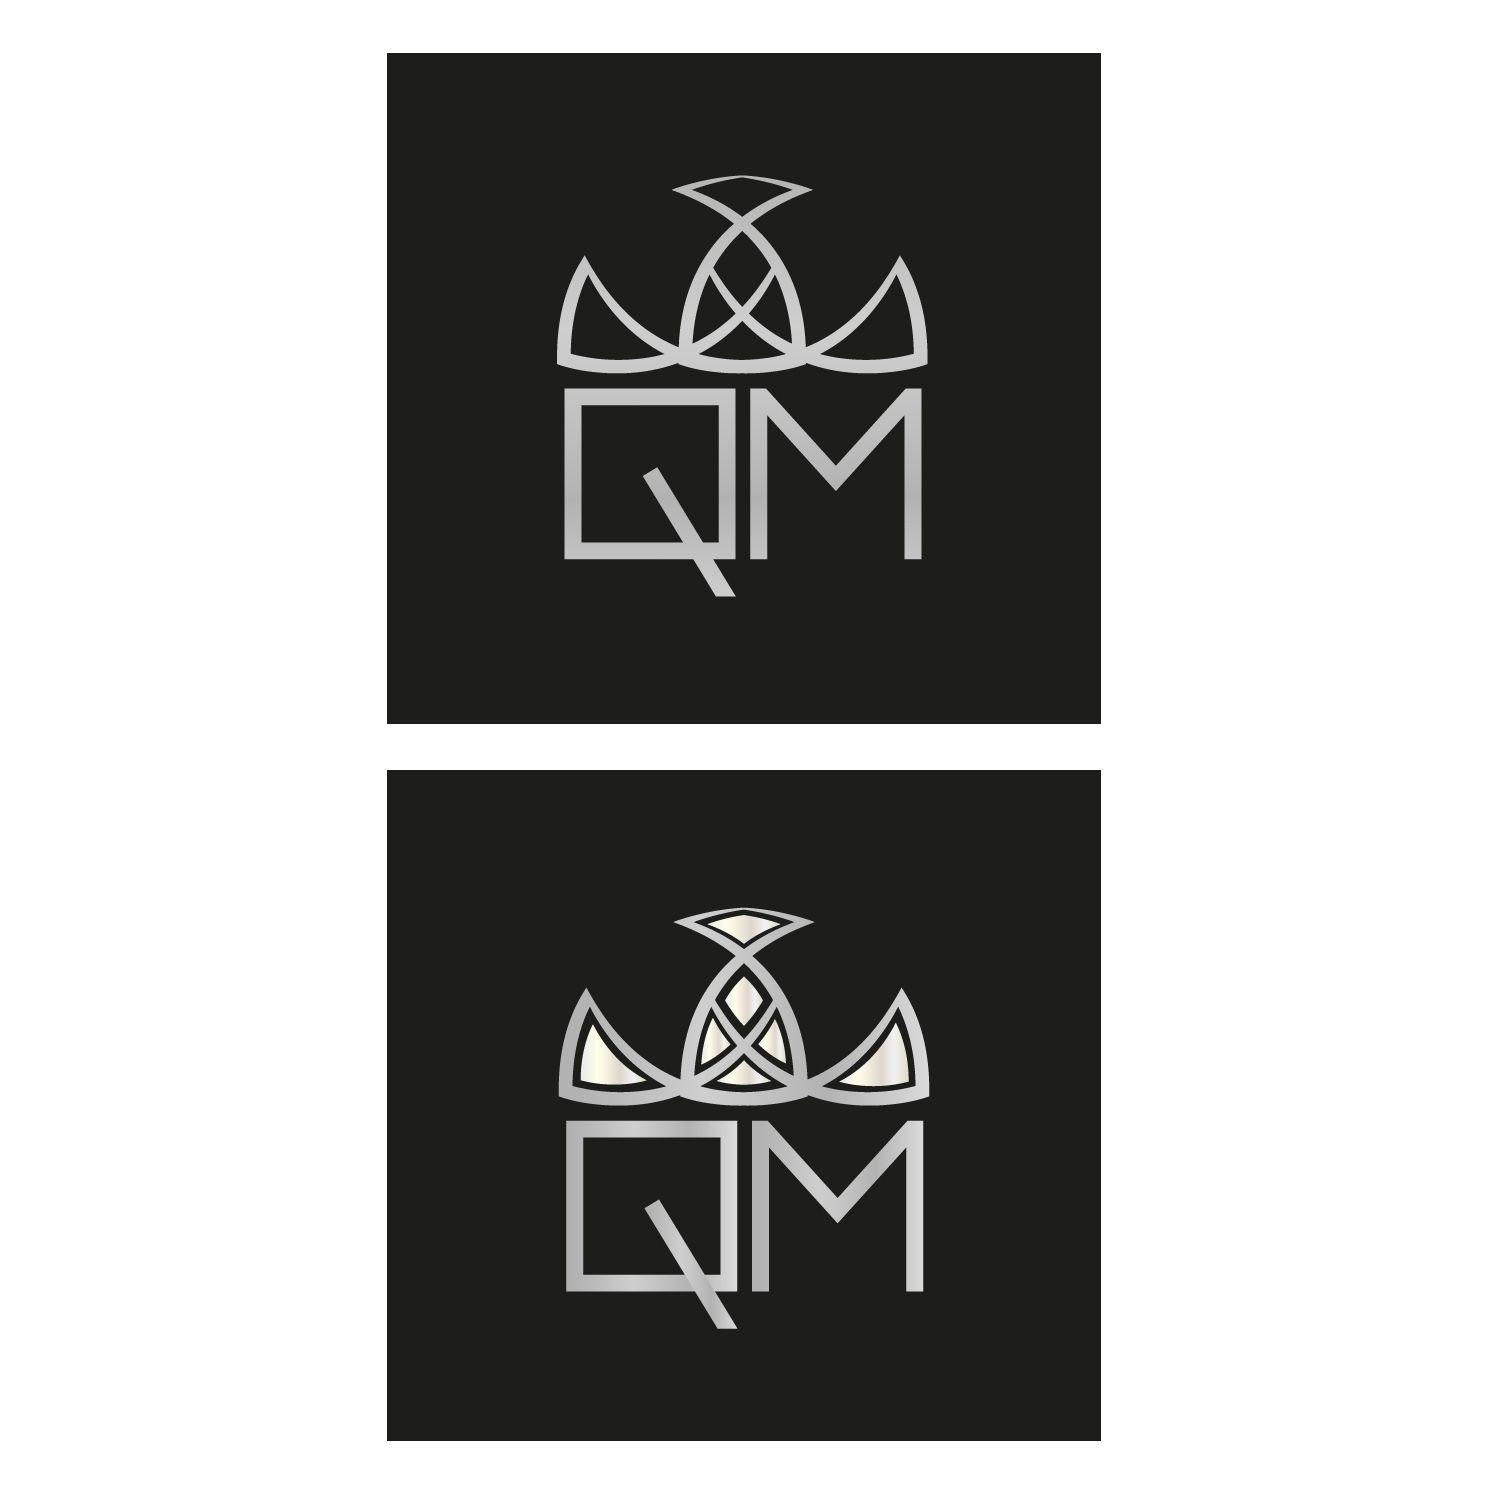 Feminine Cross Logo - Feminine, Elegant, Cosmetics Logo Design for Q M